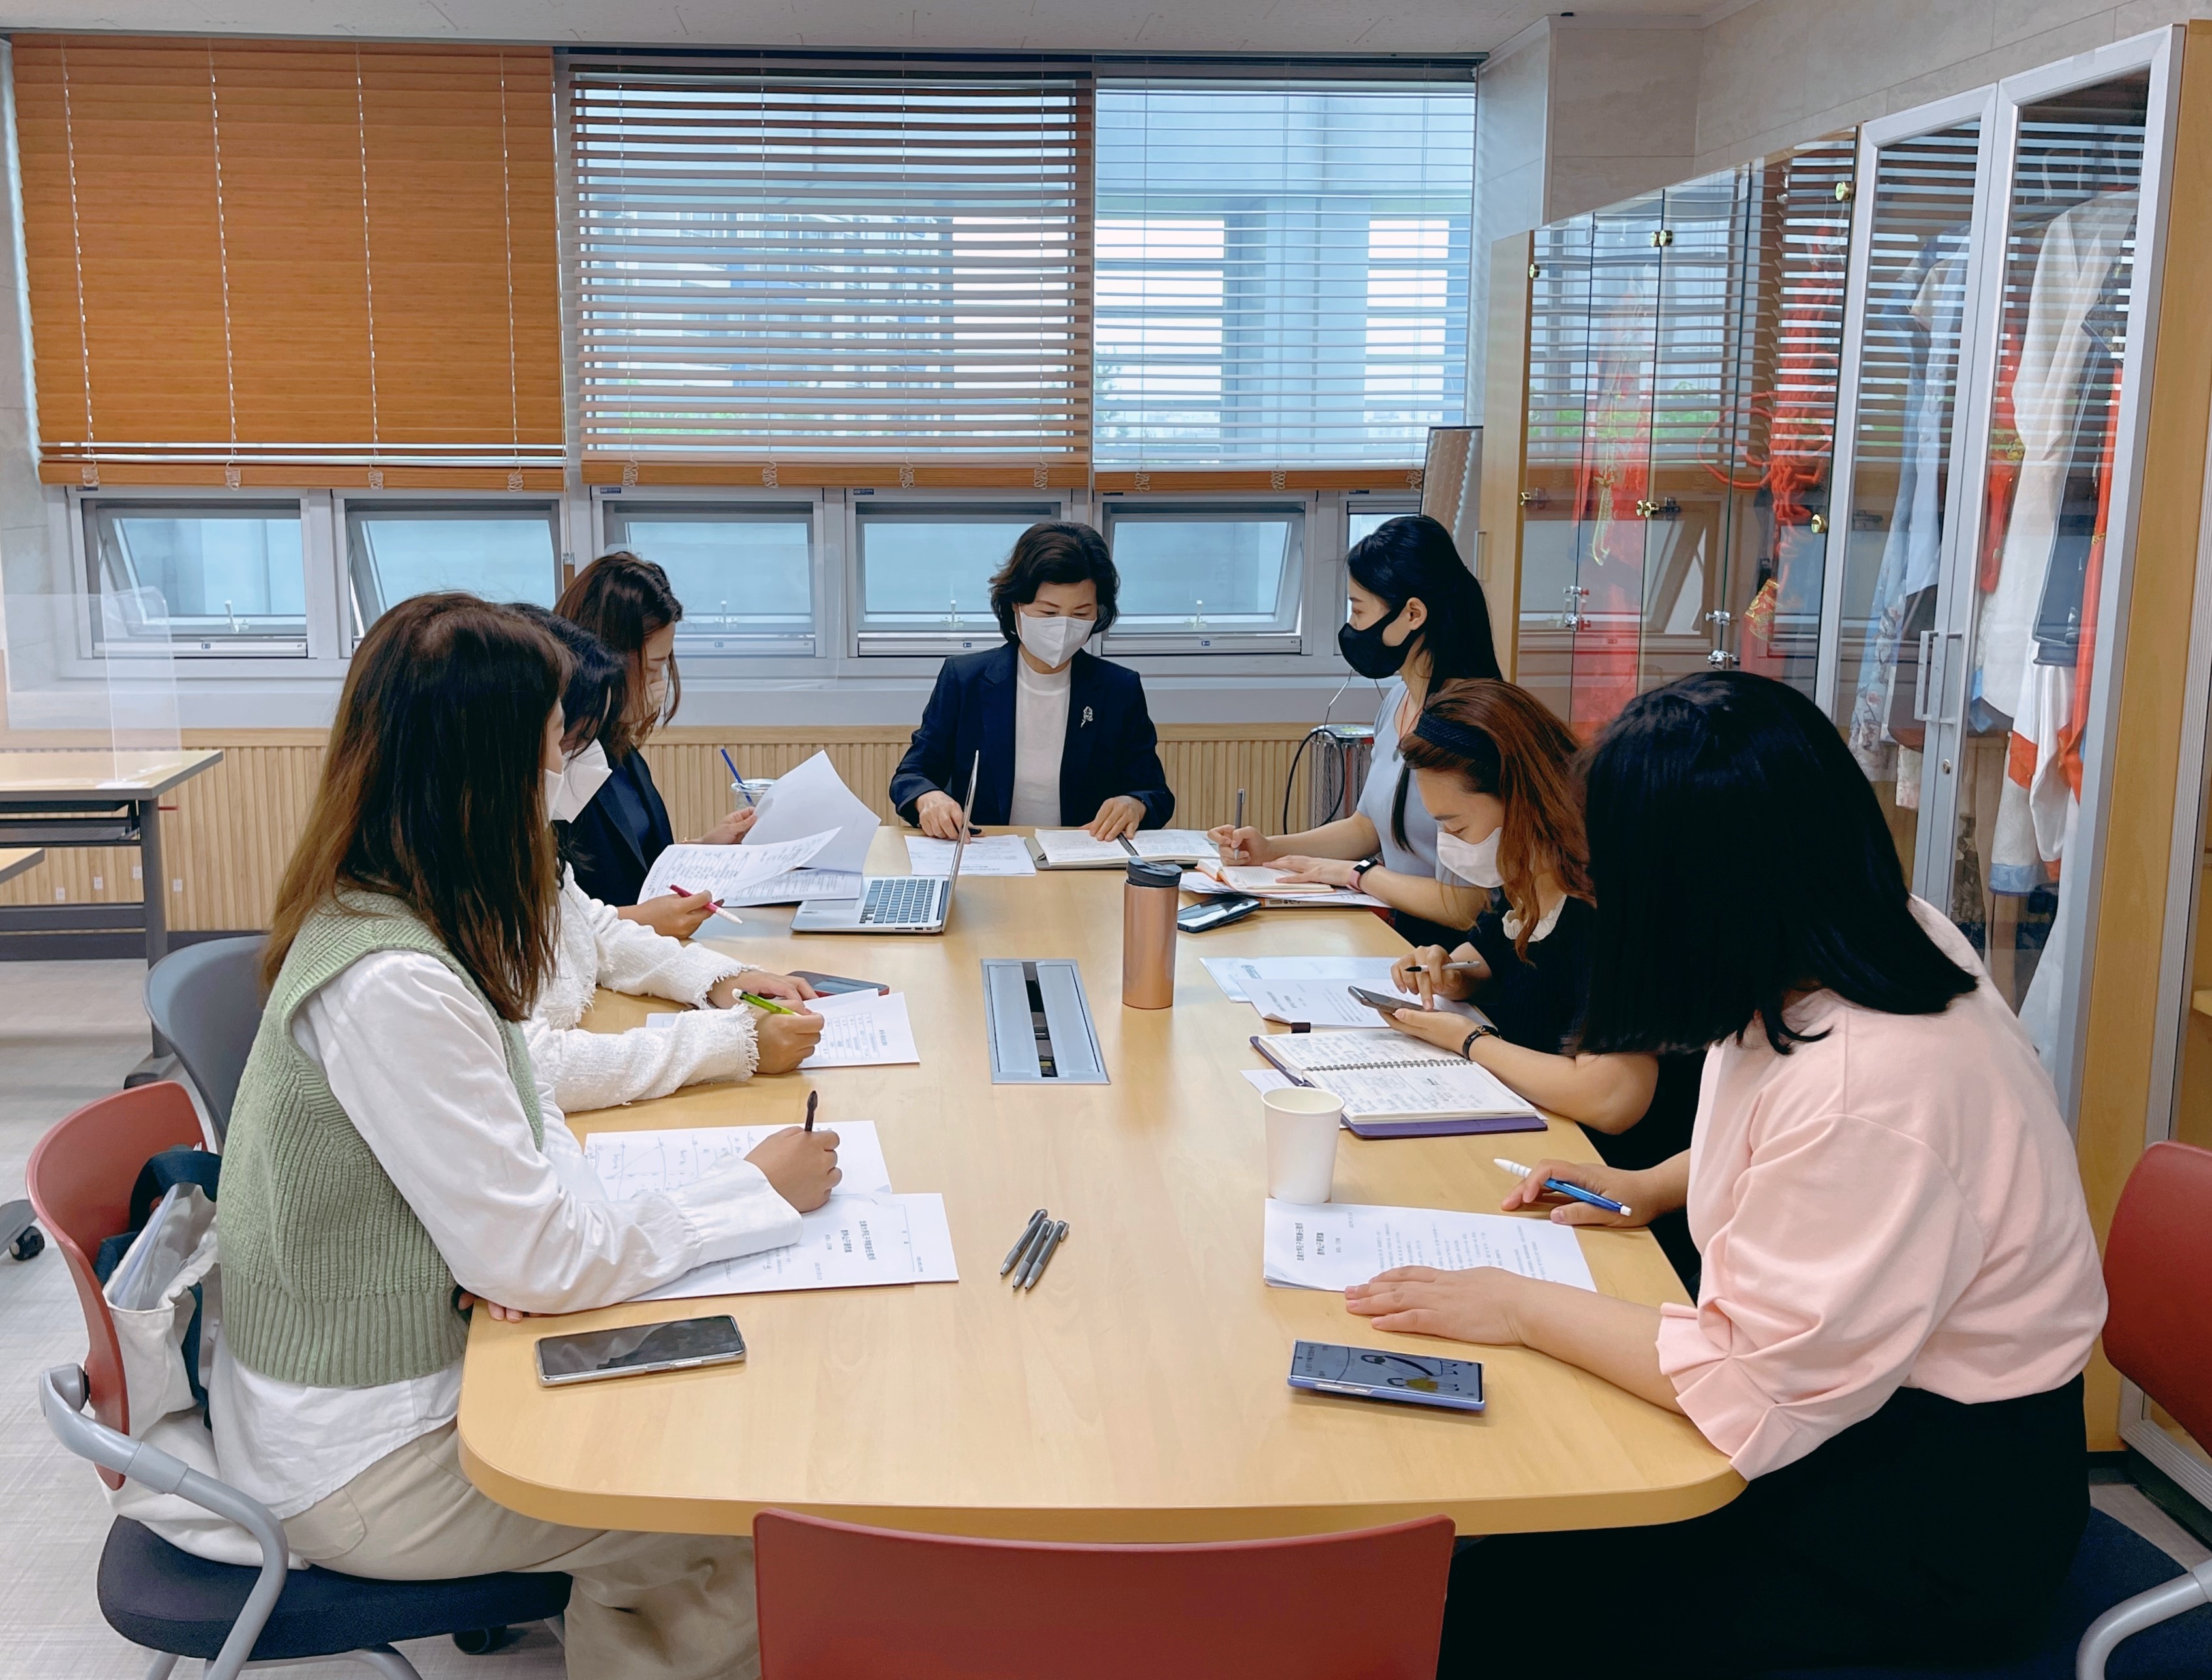 韩国忠南大学孔子学院召开新任教师教学观摩研讨会